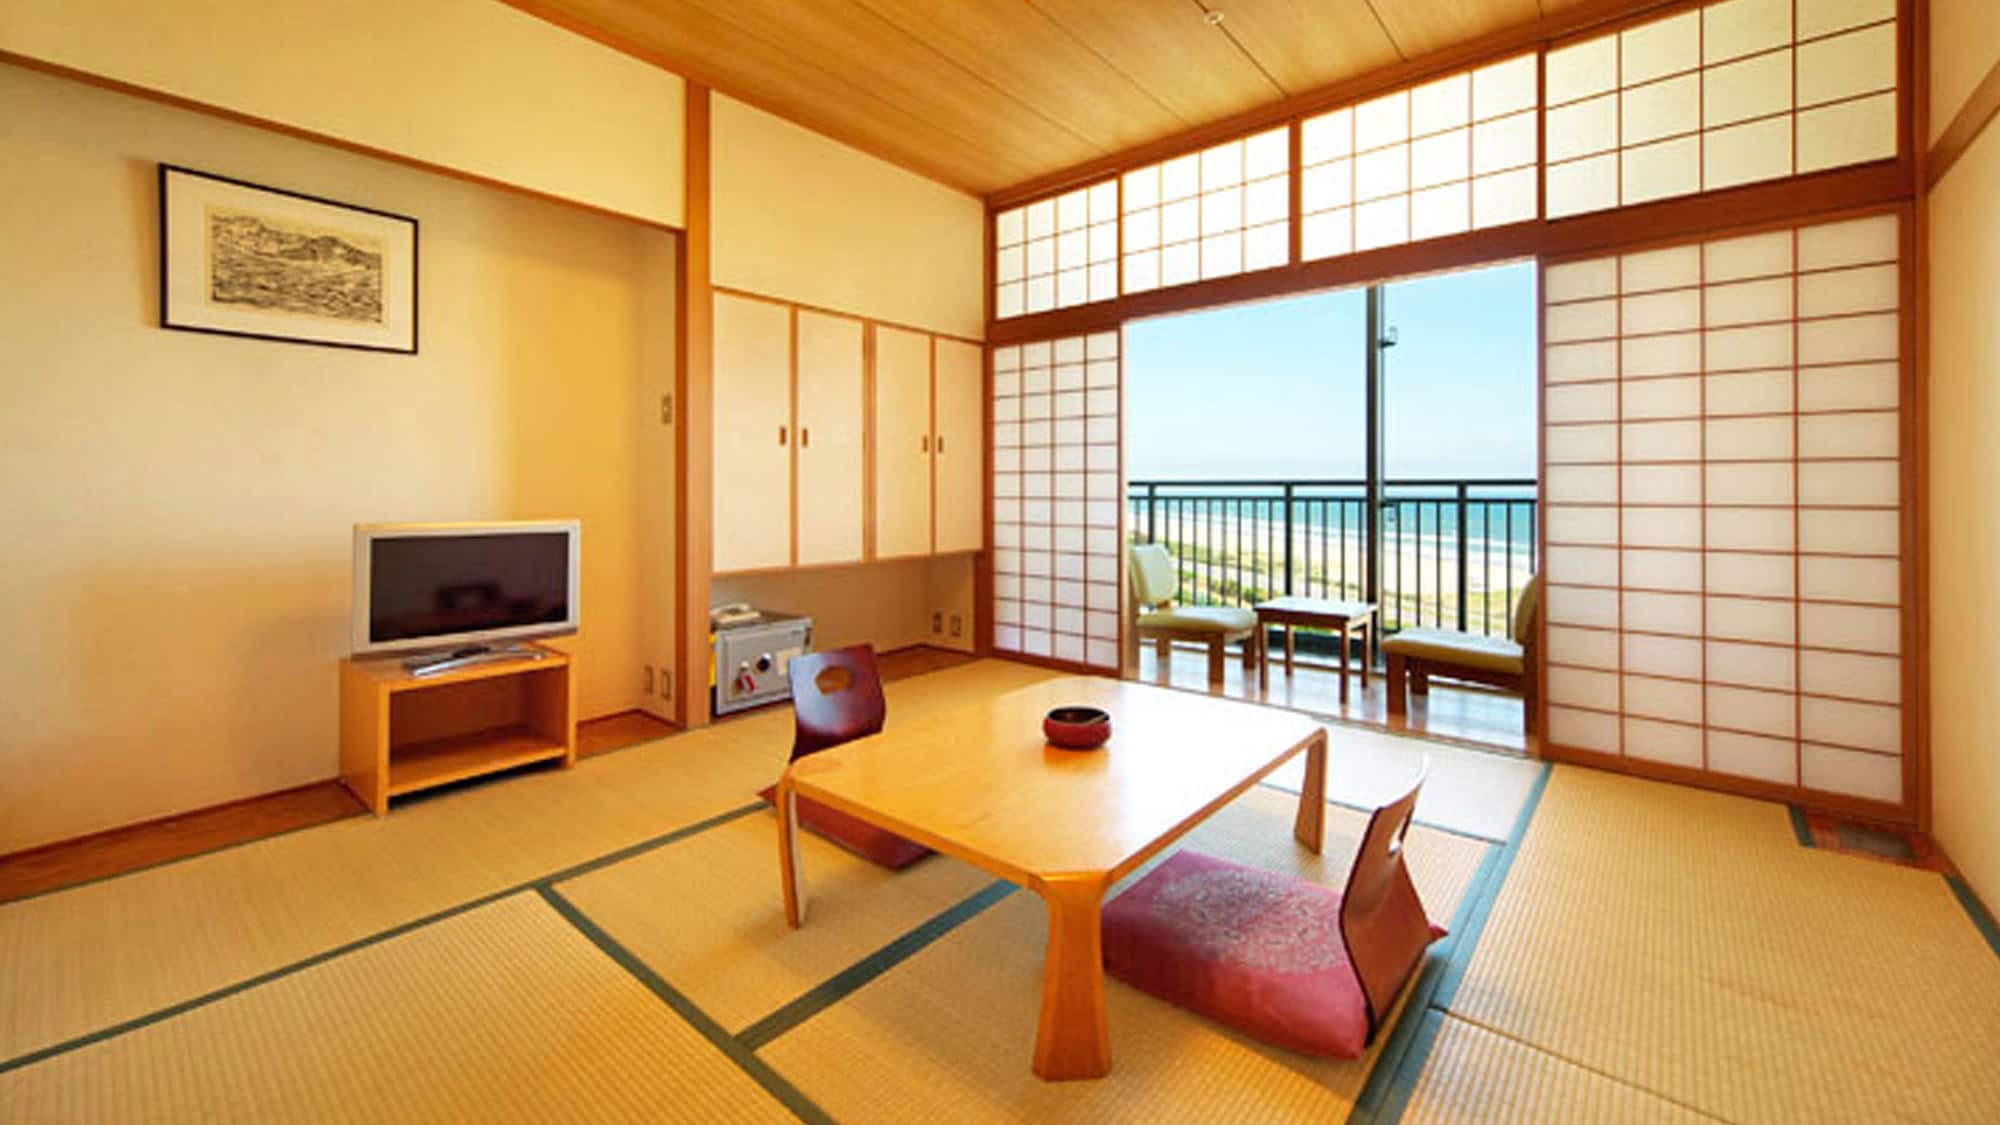 [ห้องสไตล์ญี่ปุ่น 10 เสื่อทาทามิ] แนะนำสำหรับการเดินทางกับครอบครัวและเพื่อนฝูง